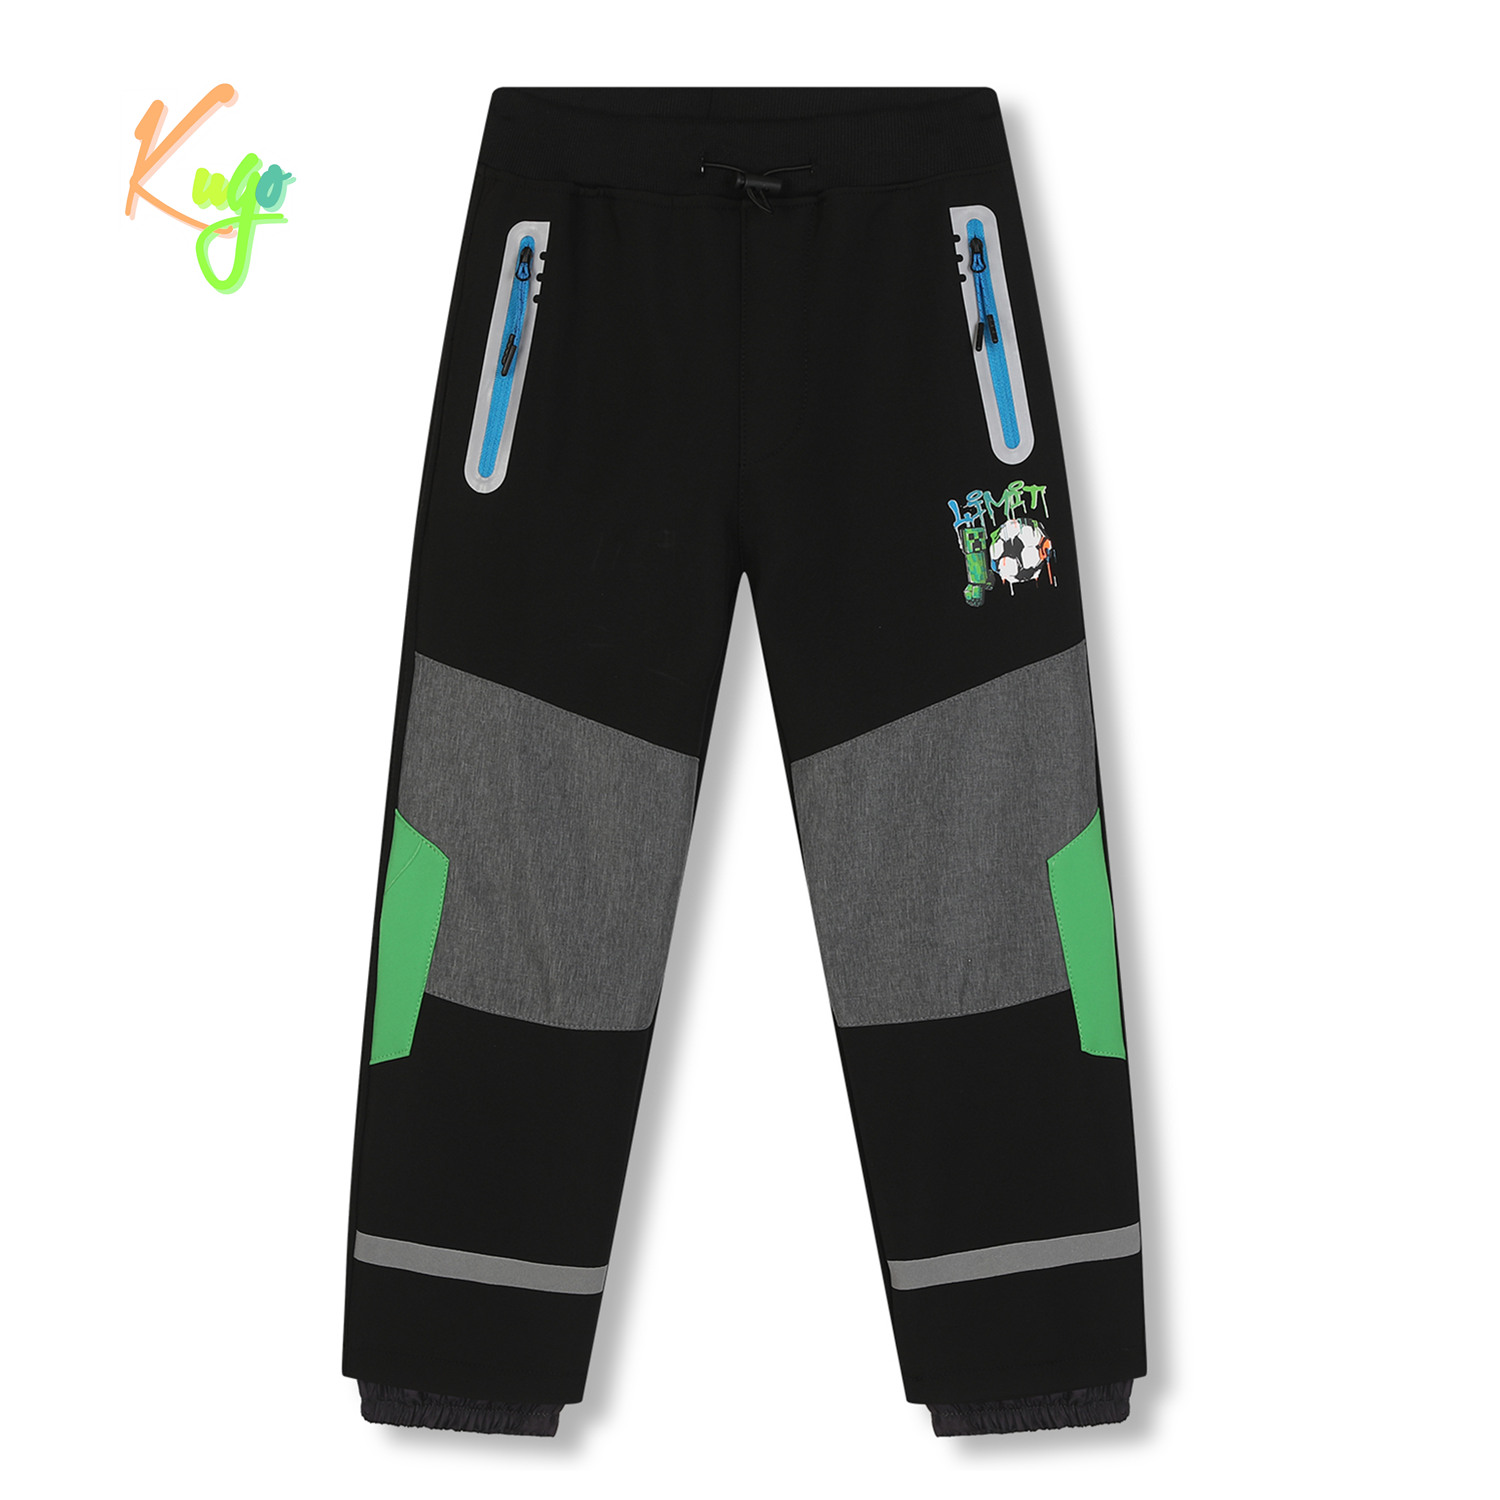 Chlapecké softshellové kalhoty, zateplené - KUGO HK5609, černá / tyrkysové zipy Barva: Černá, Velikost: 104